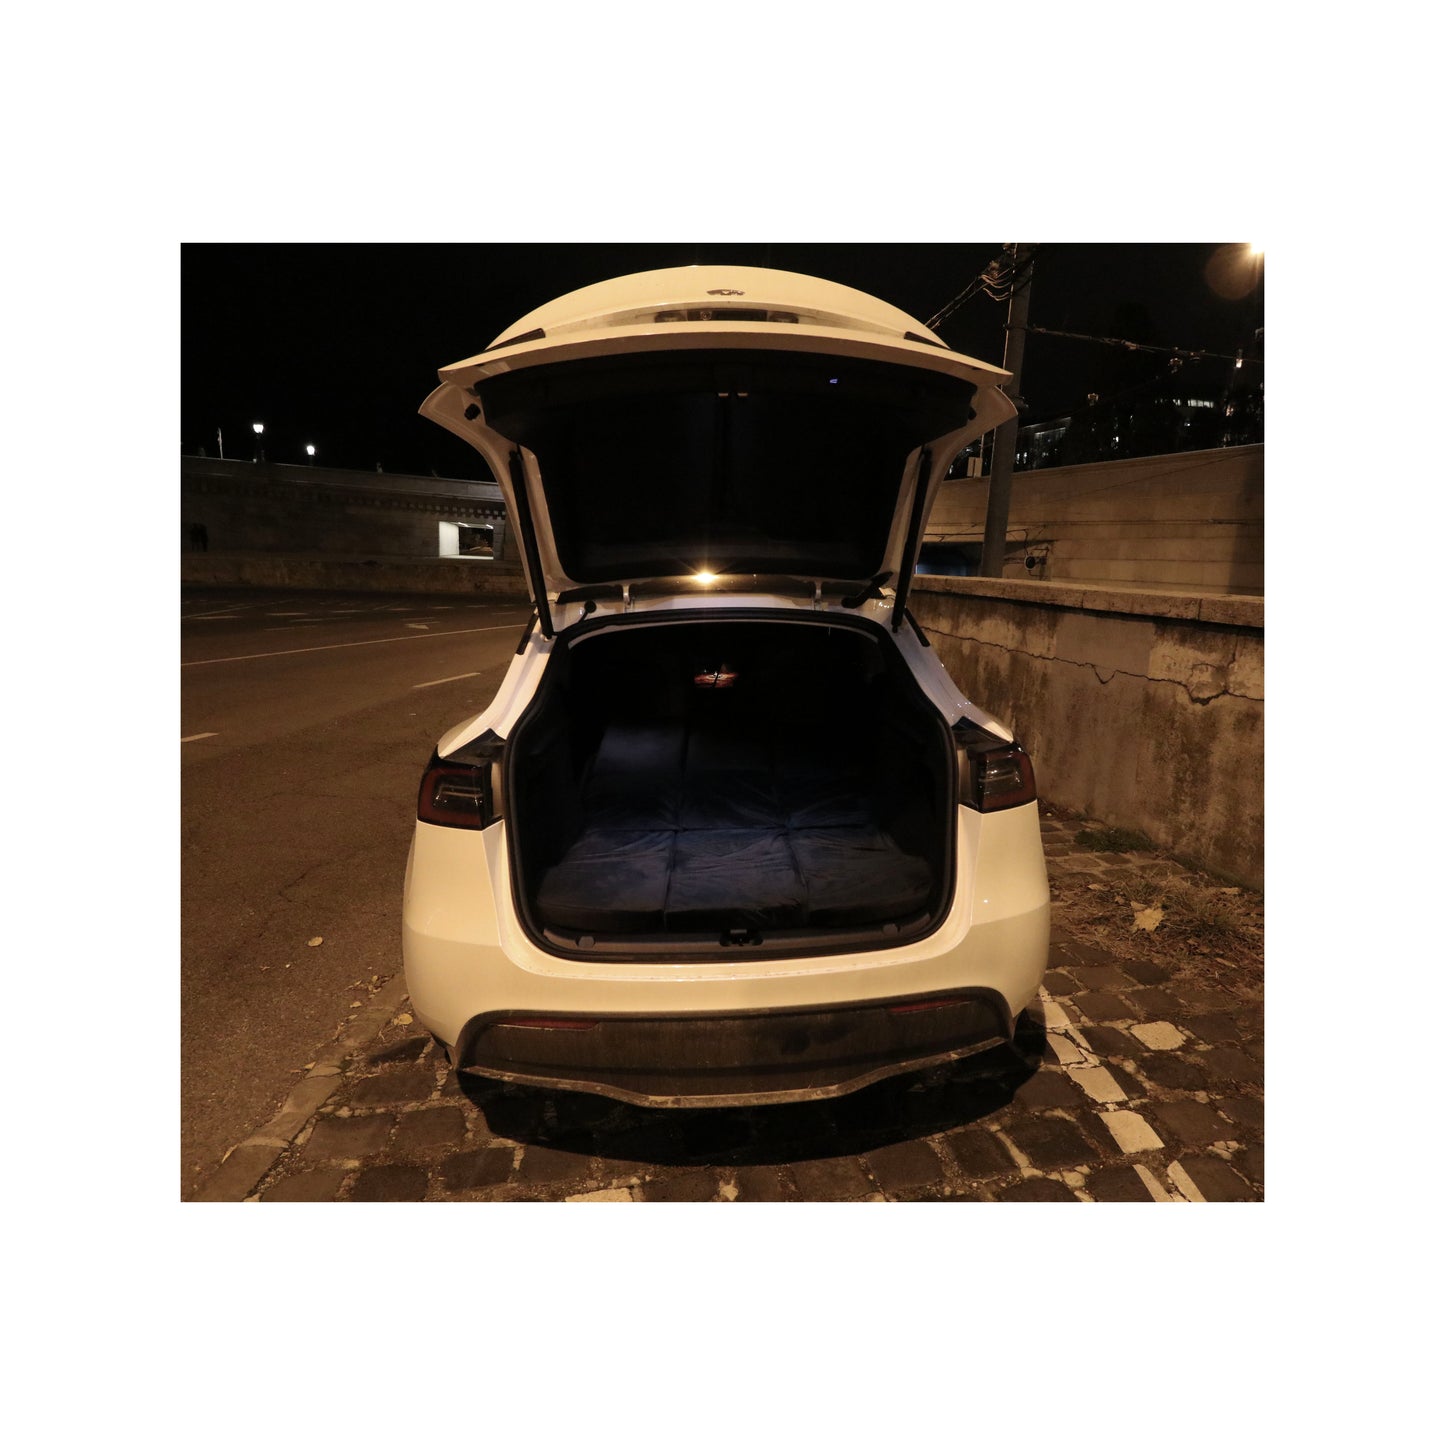 EV-MATS Deluxe CAMP SET do Tesla Model 3 z materacem Tesla wodoodporną torbą na tylną komorę bagażową, pościelą satynową, kołdrą, 2 poduszkami z pokrowcami, 11 odcieniami i 2 wodoodpornymi torbami na przednią komorę bagażową Tesla Model 3